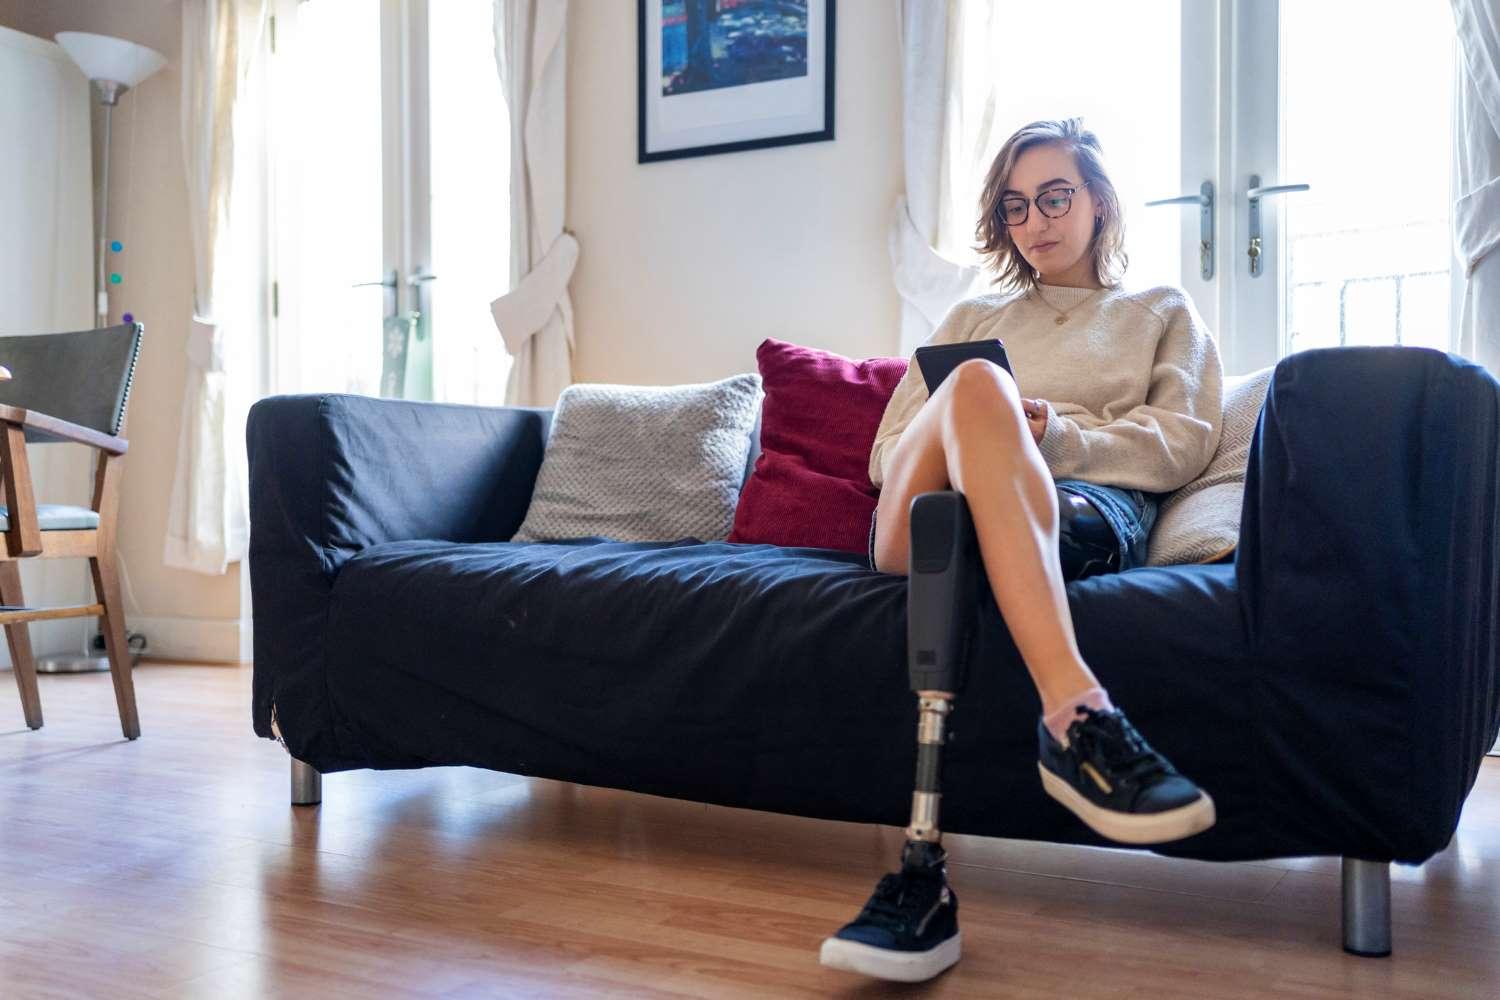 Prothesen: Junge Frau mit einer Beinprothese sitzt im Wohnzimmer auf einem Sofa und schaut auf ihr Smartphone.